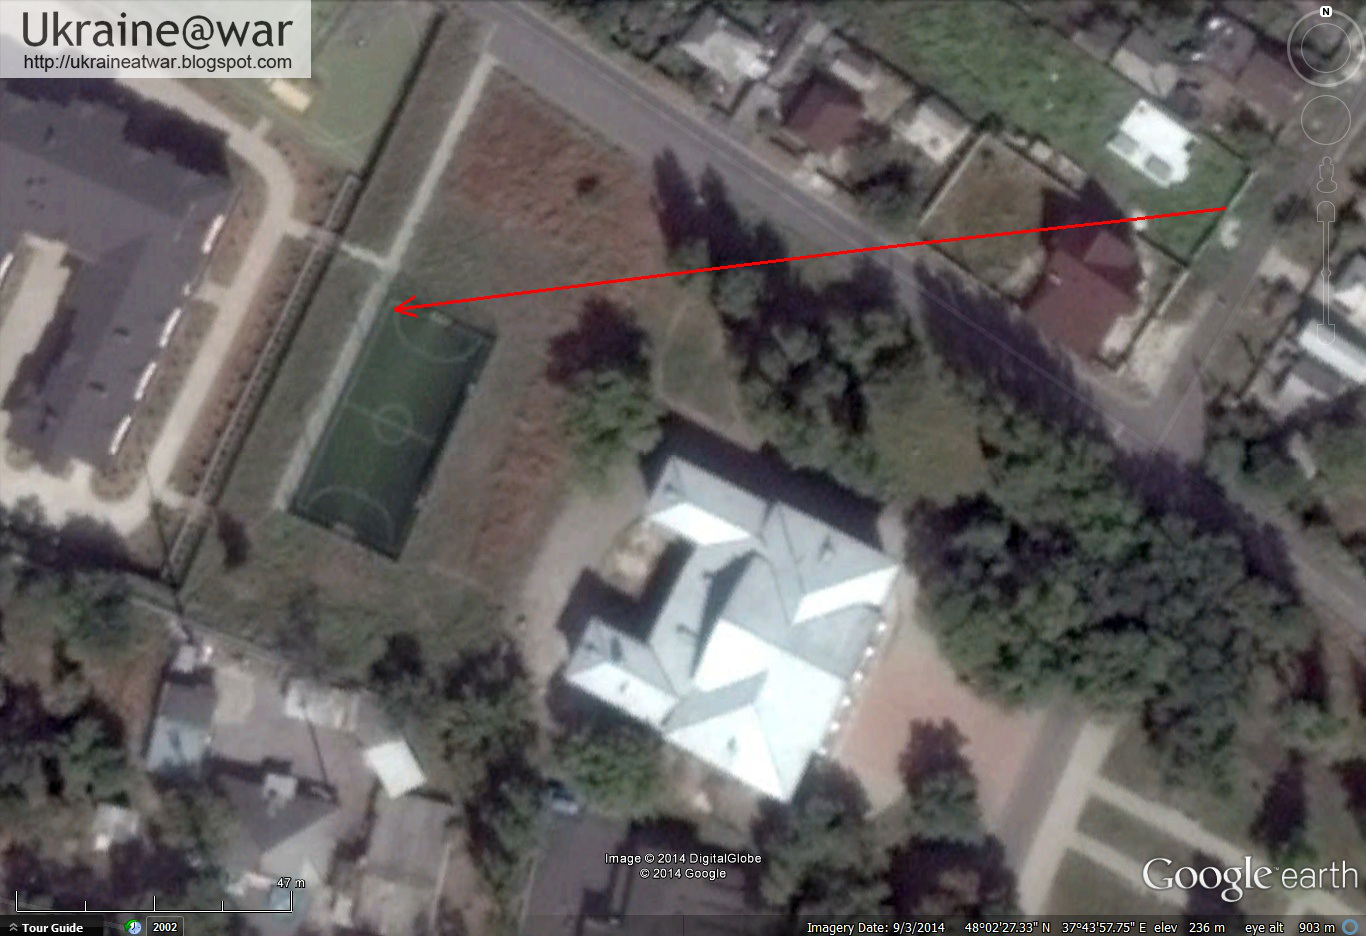 Google Earth zeigt die genaue Lage des Sportplatzes und des Zauns